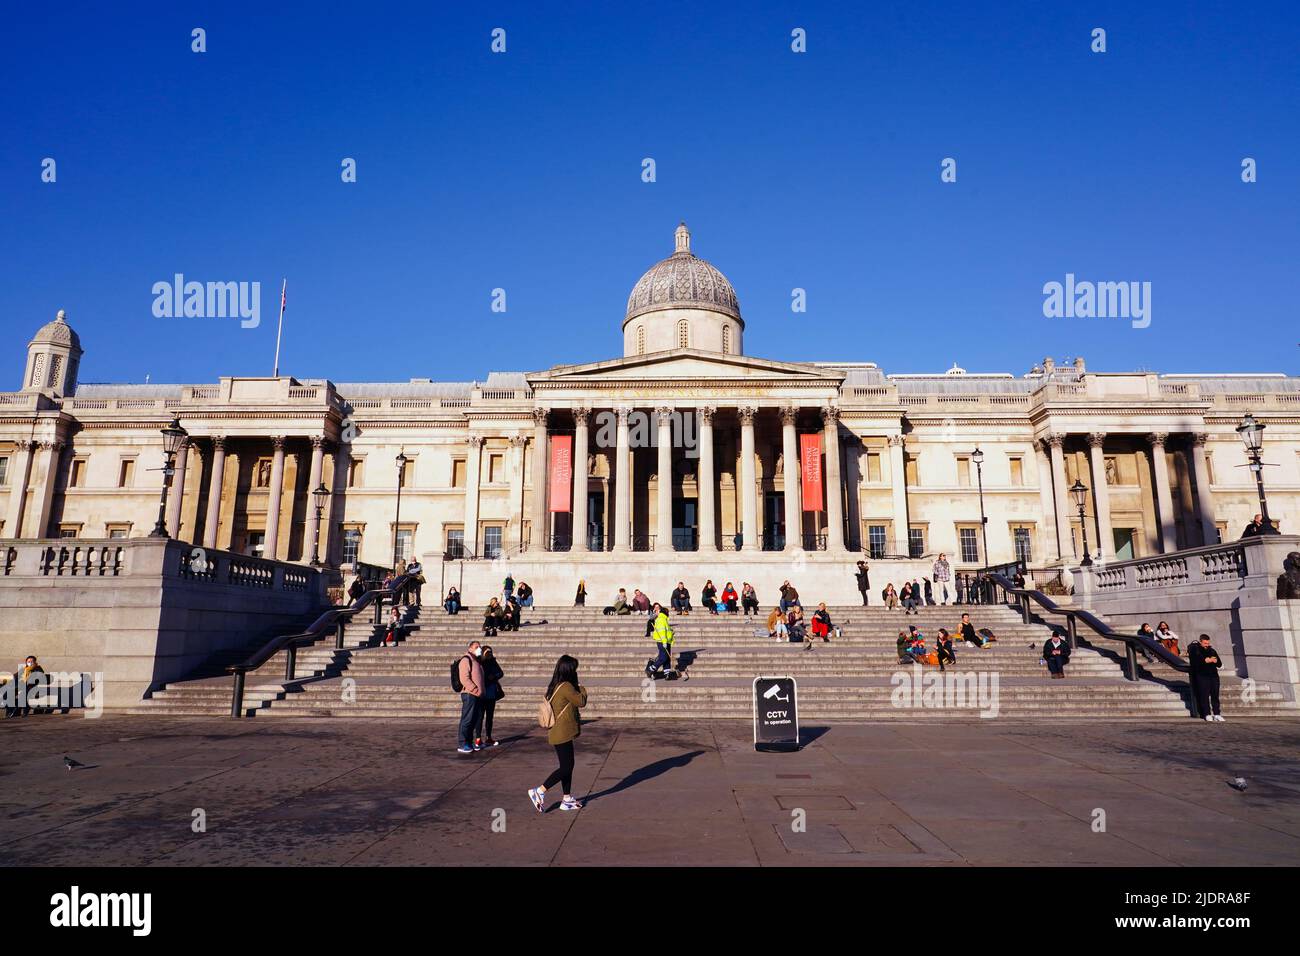 Photo du dossier datée du 17/01/22 de personnes assises devant la National Gallery de Londres, alors que la National Gallery a annoncé son intention de célébrer 200 ans avec un festival d'un an de 'art, de créativité et d'imagination'. Banque D'Images